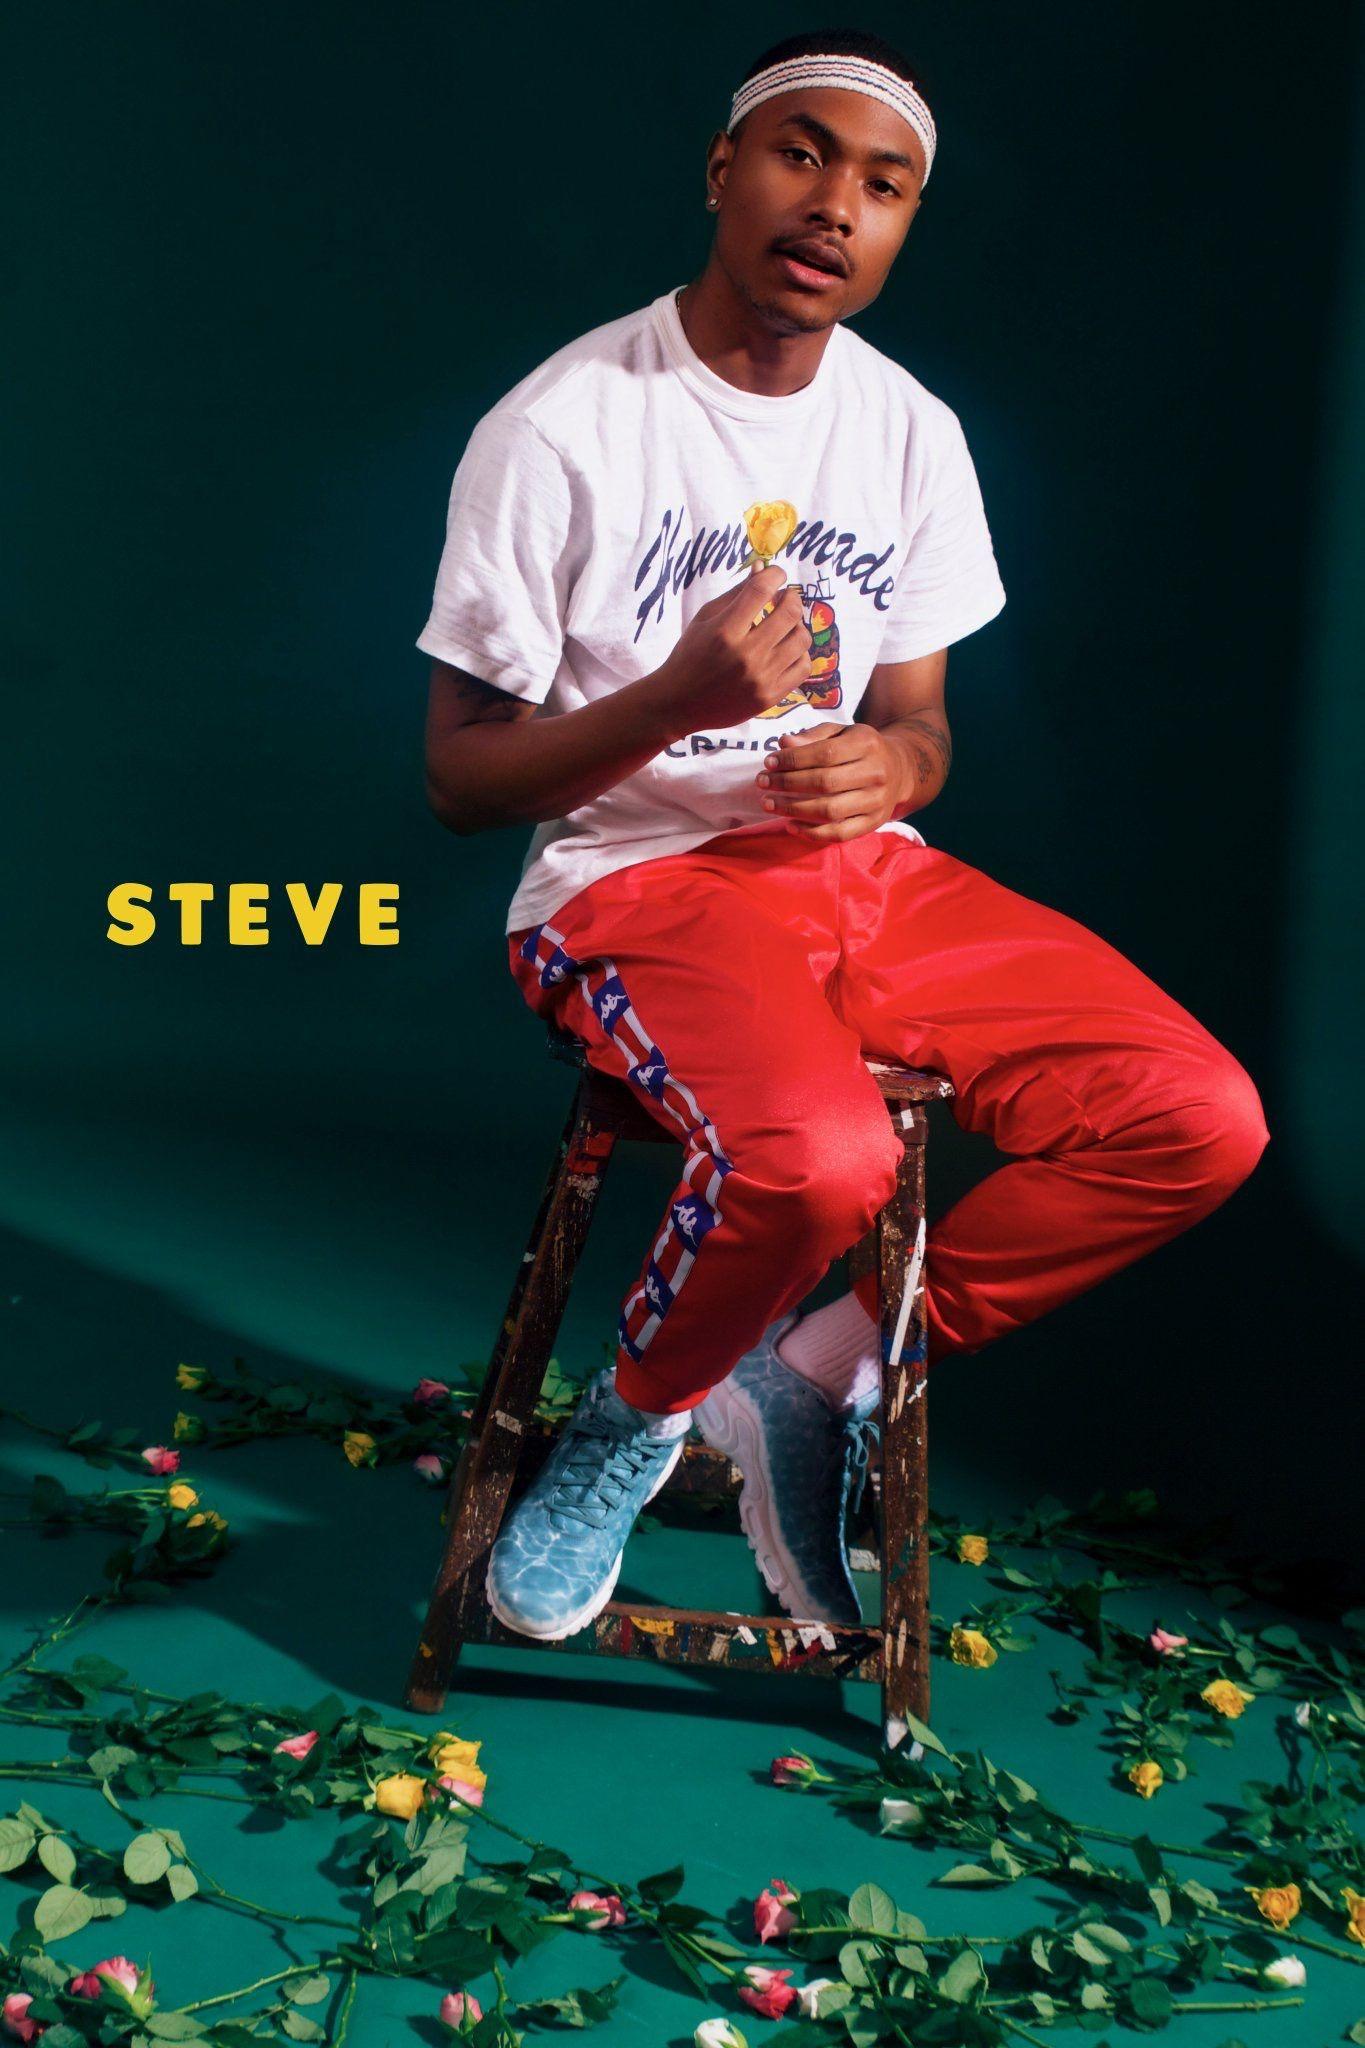 steve lacy. ˗ˏˋ black boy joy. ¨̮. Steve lacy, Steve o